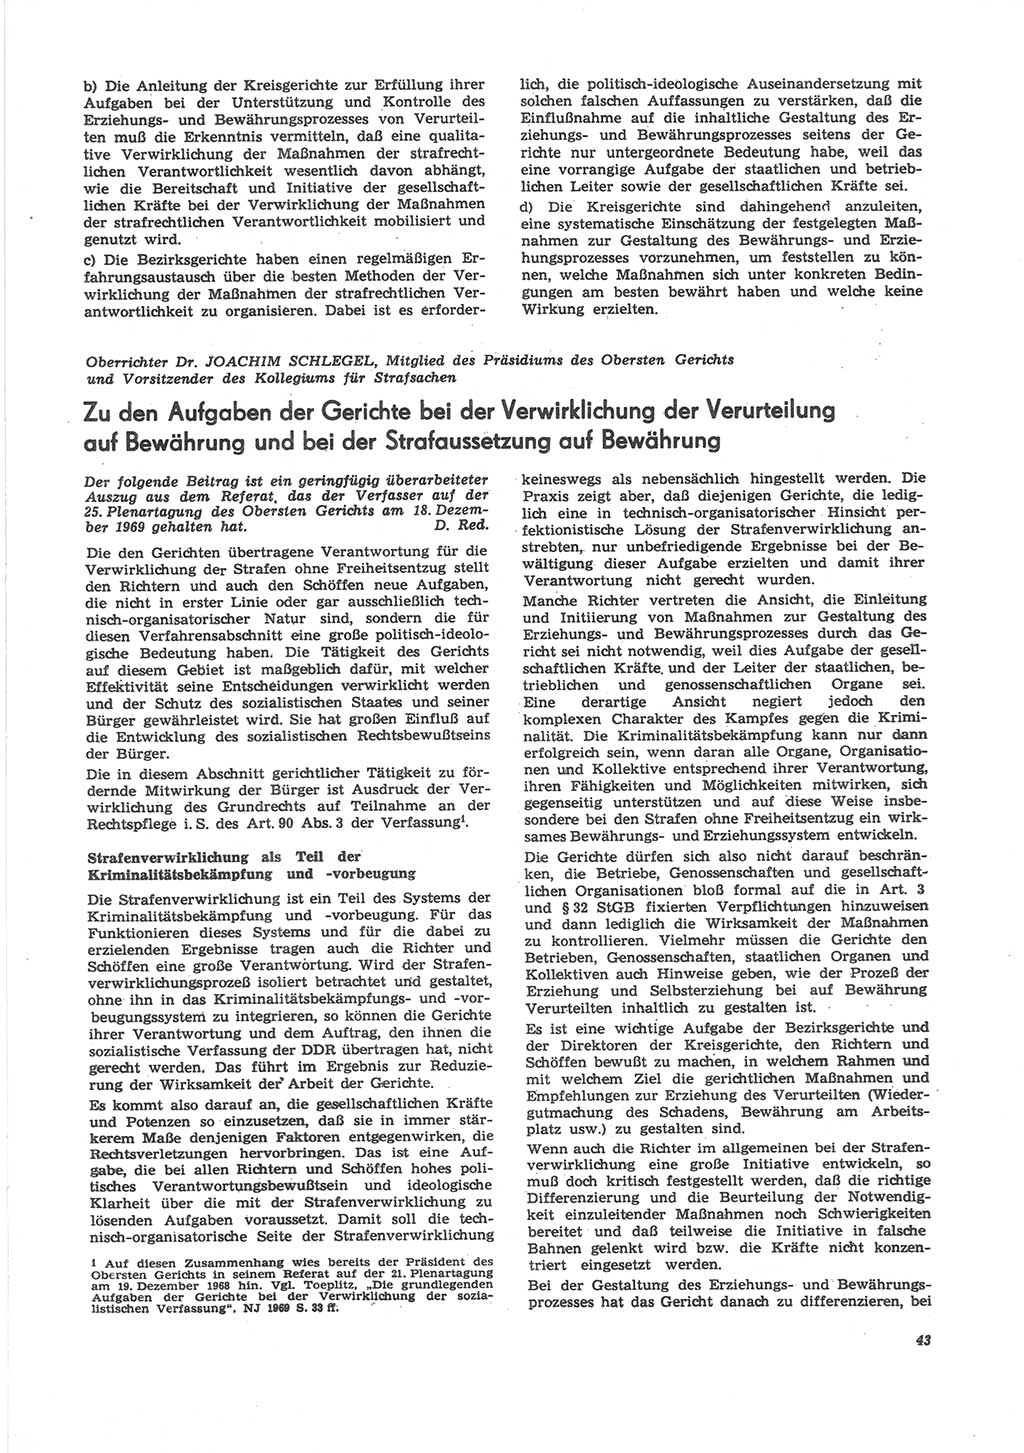 Neue Justiz (NJ), Zeitschrift für Recht und Rechtswissenschaft [Deutsche Demokratische Republik (DDR)], 24. Jahrgang 1970, Seite 43 (NJ DDR 1970, S. 43)